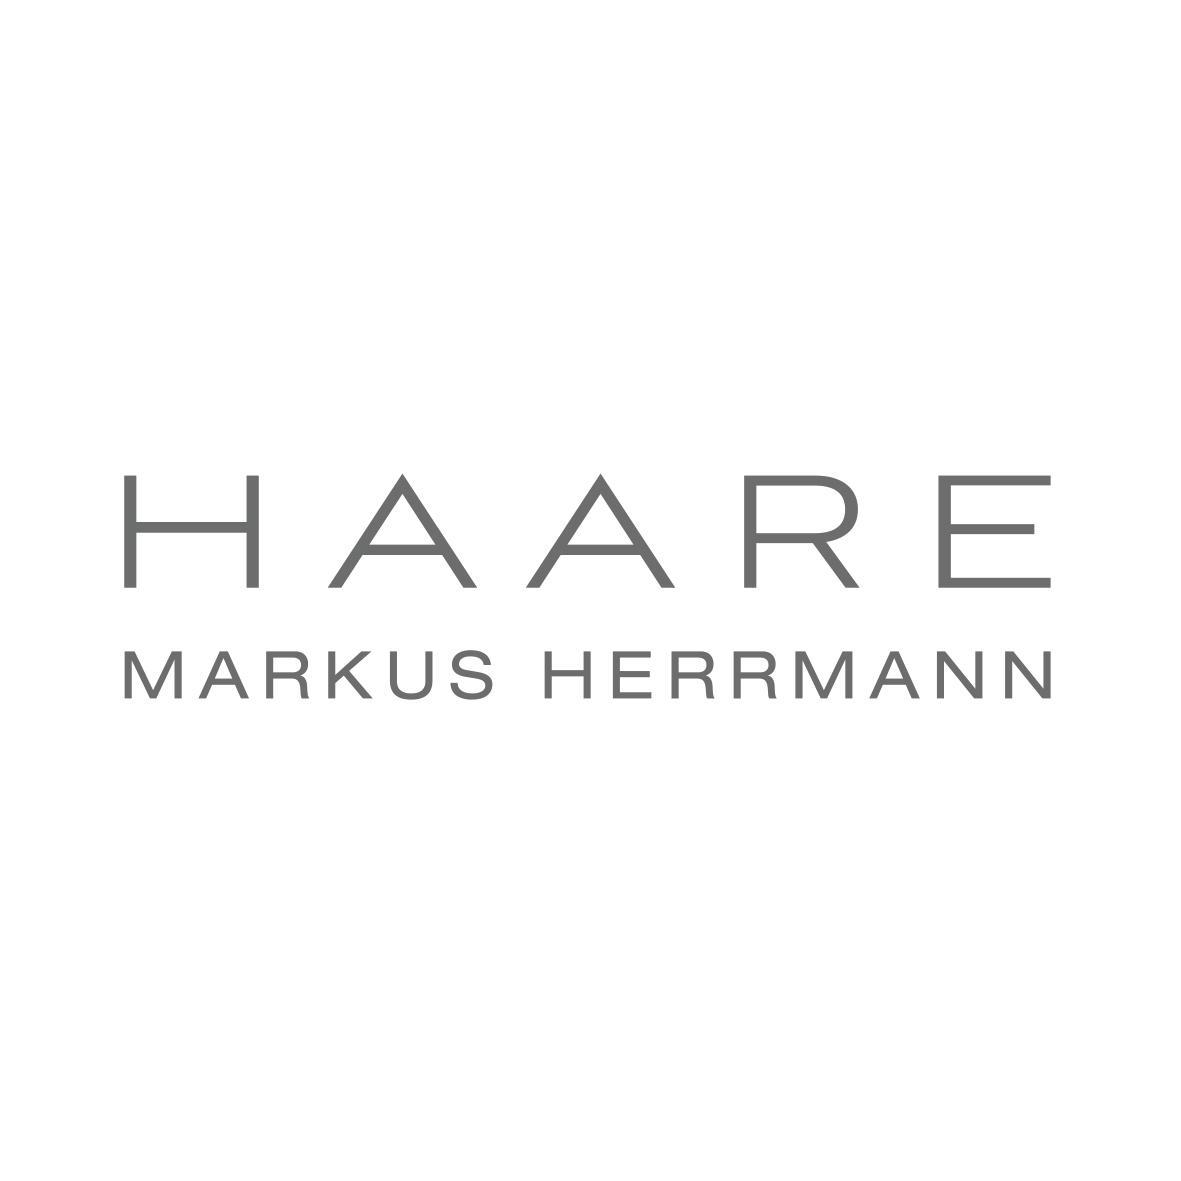 Haare Markus Herrmann Logo